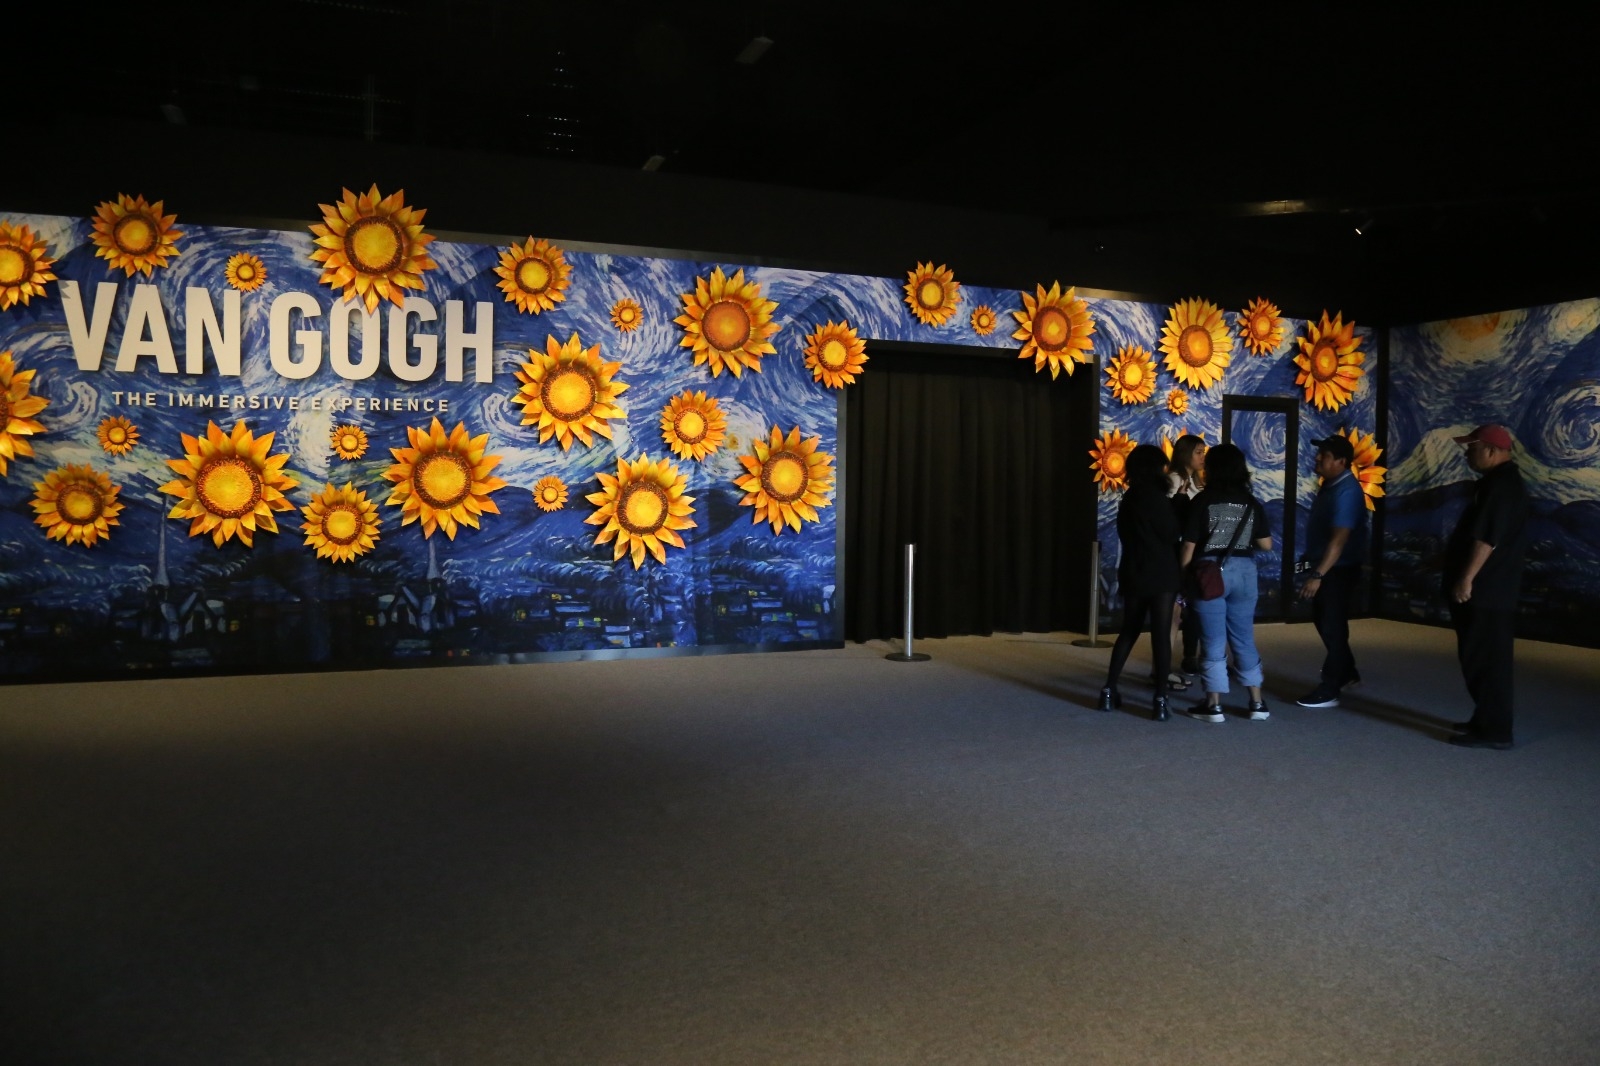 Llega Van Gogh a Mérida con una exposición de arte inmersiva